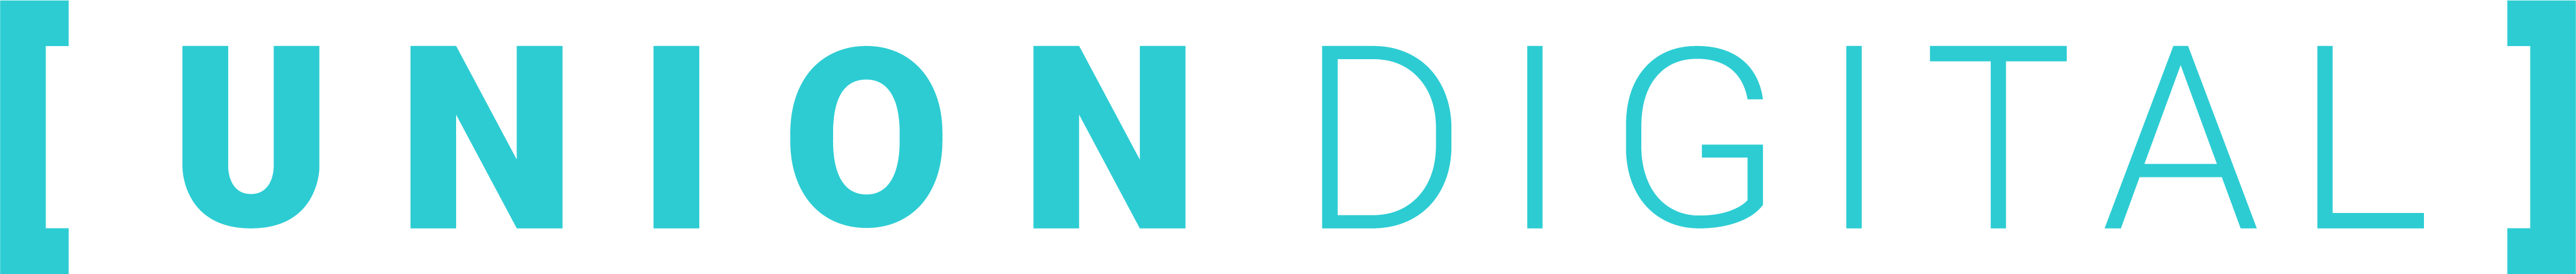 union digital logo